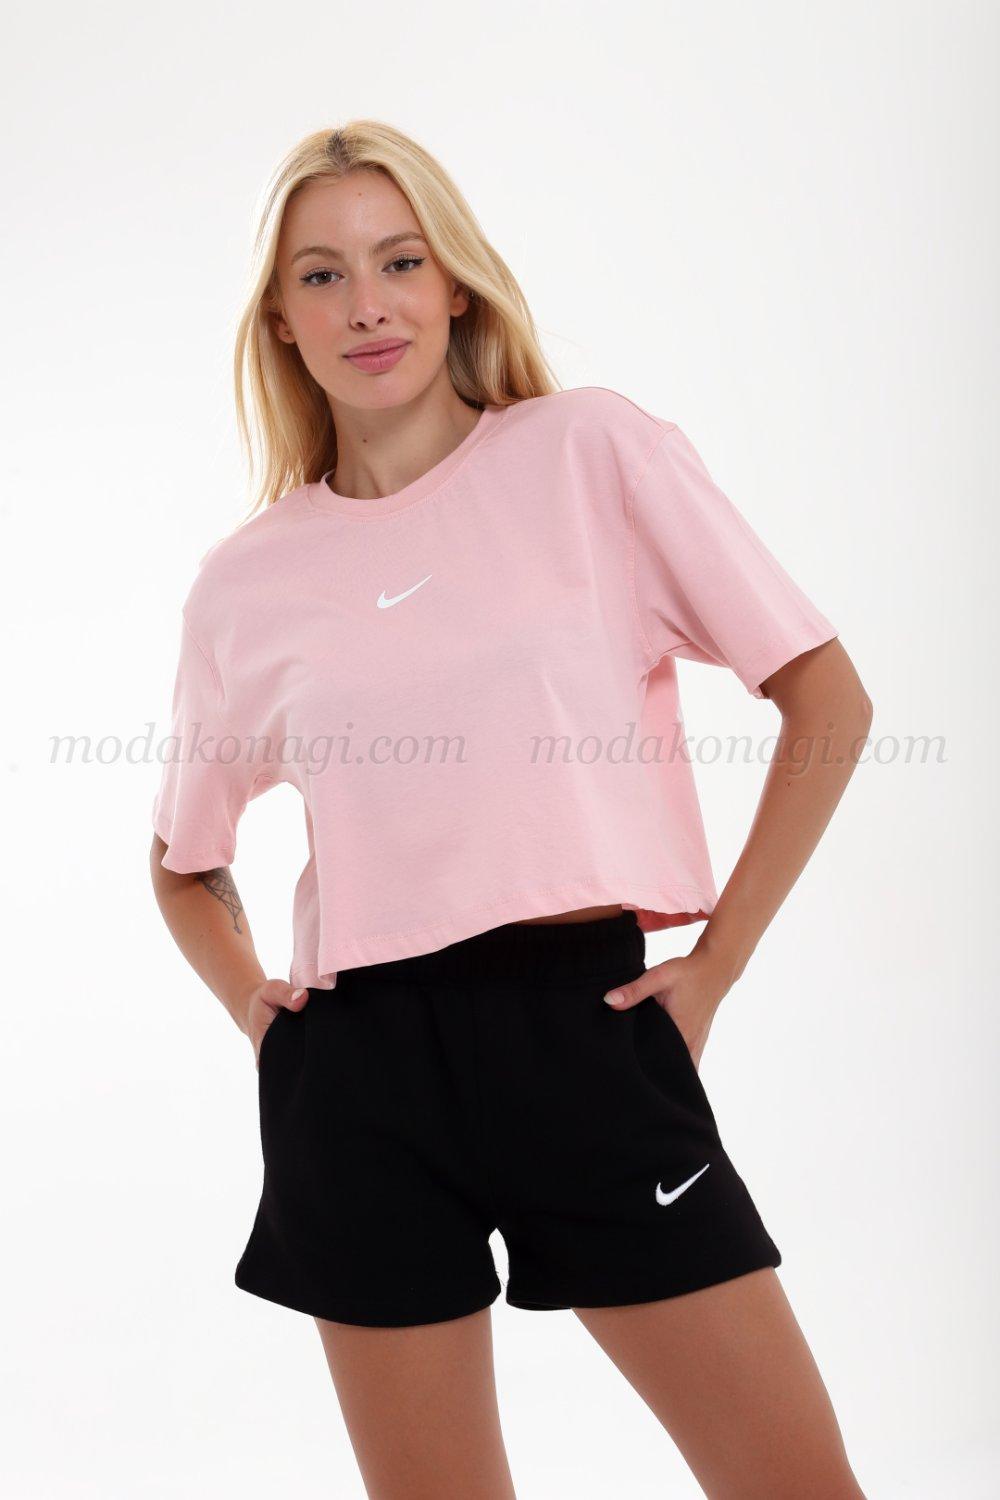 Kadın Nike Klasik Kısa T-Shirt Pudra